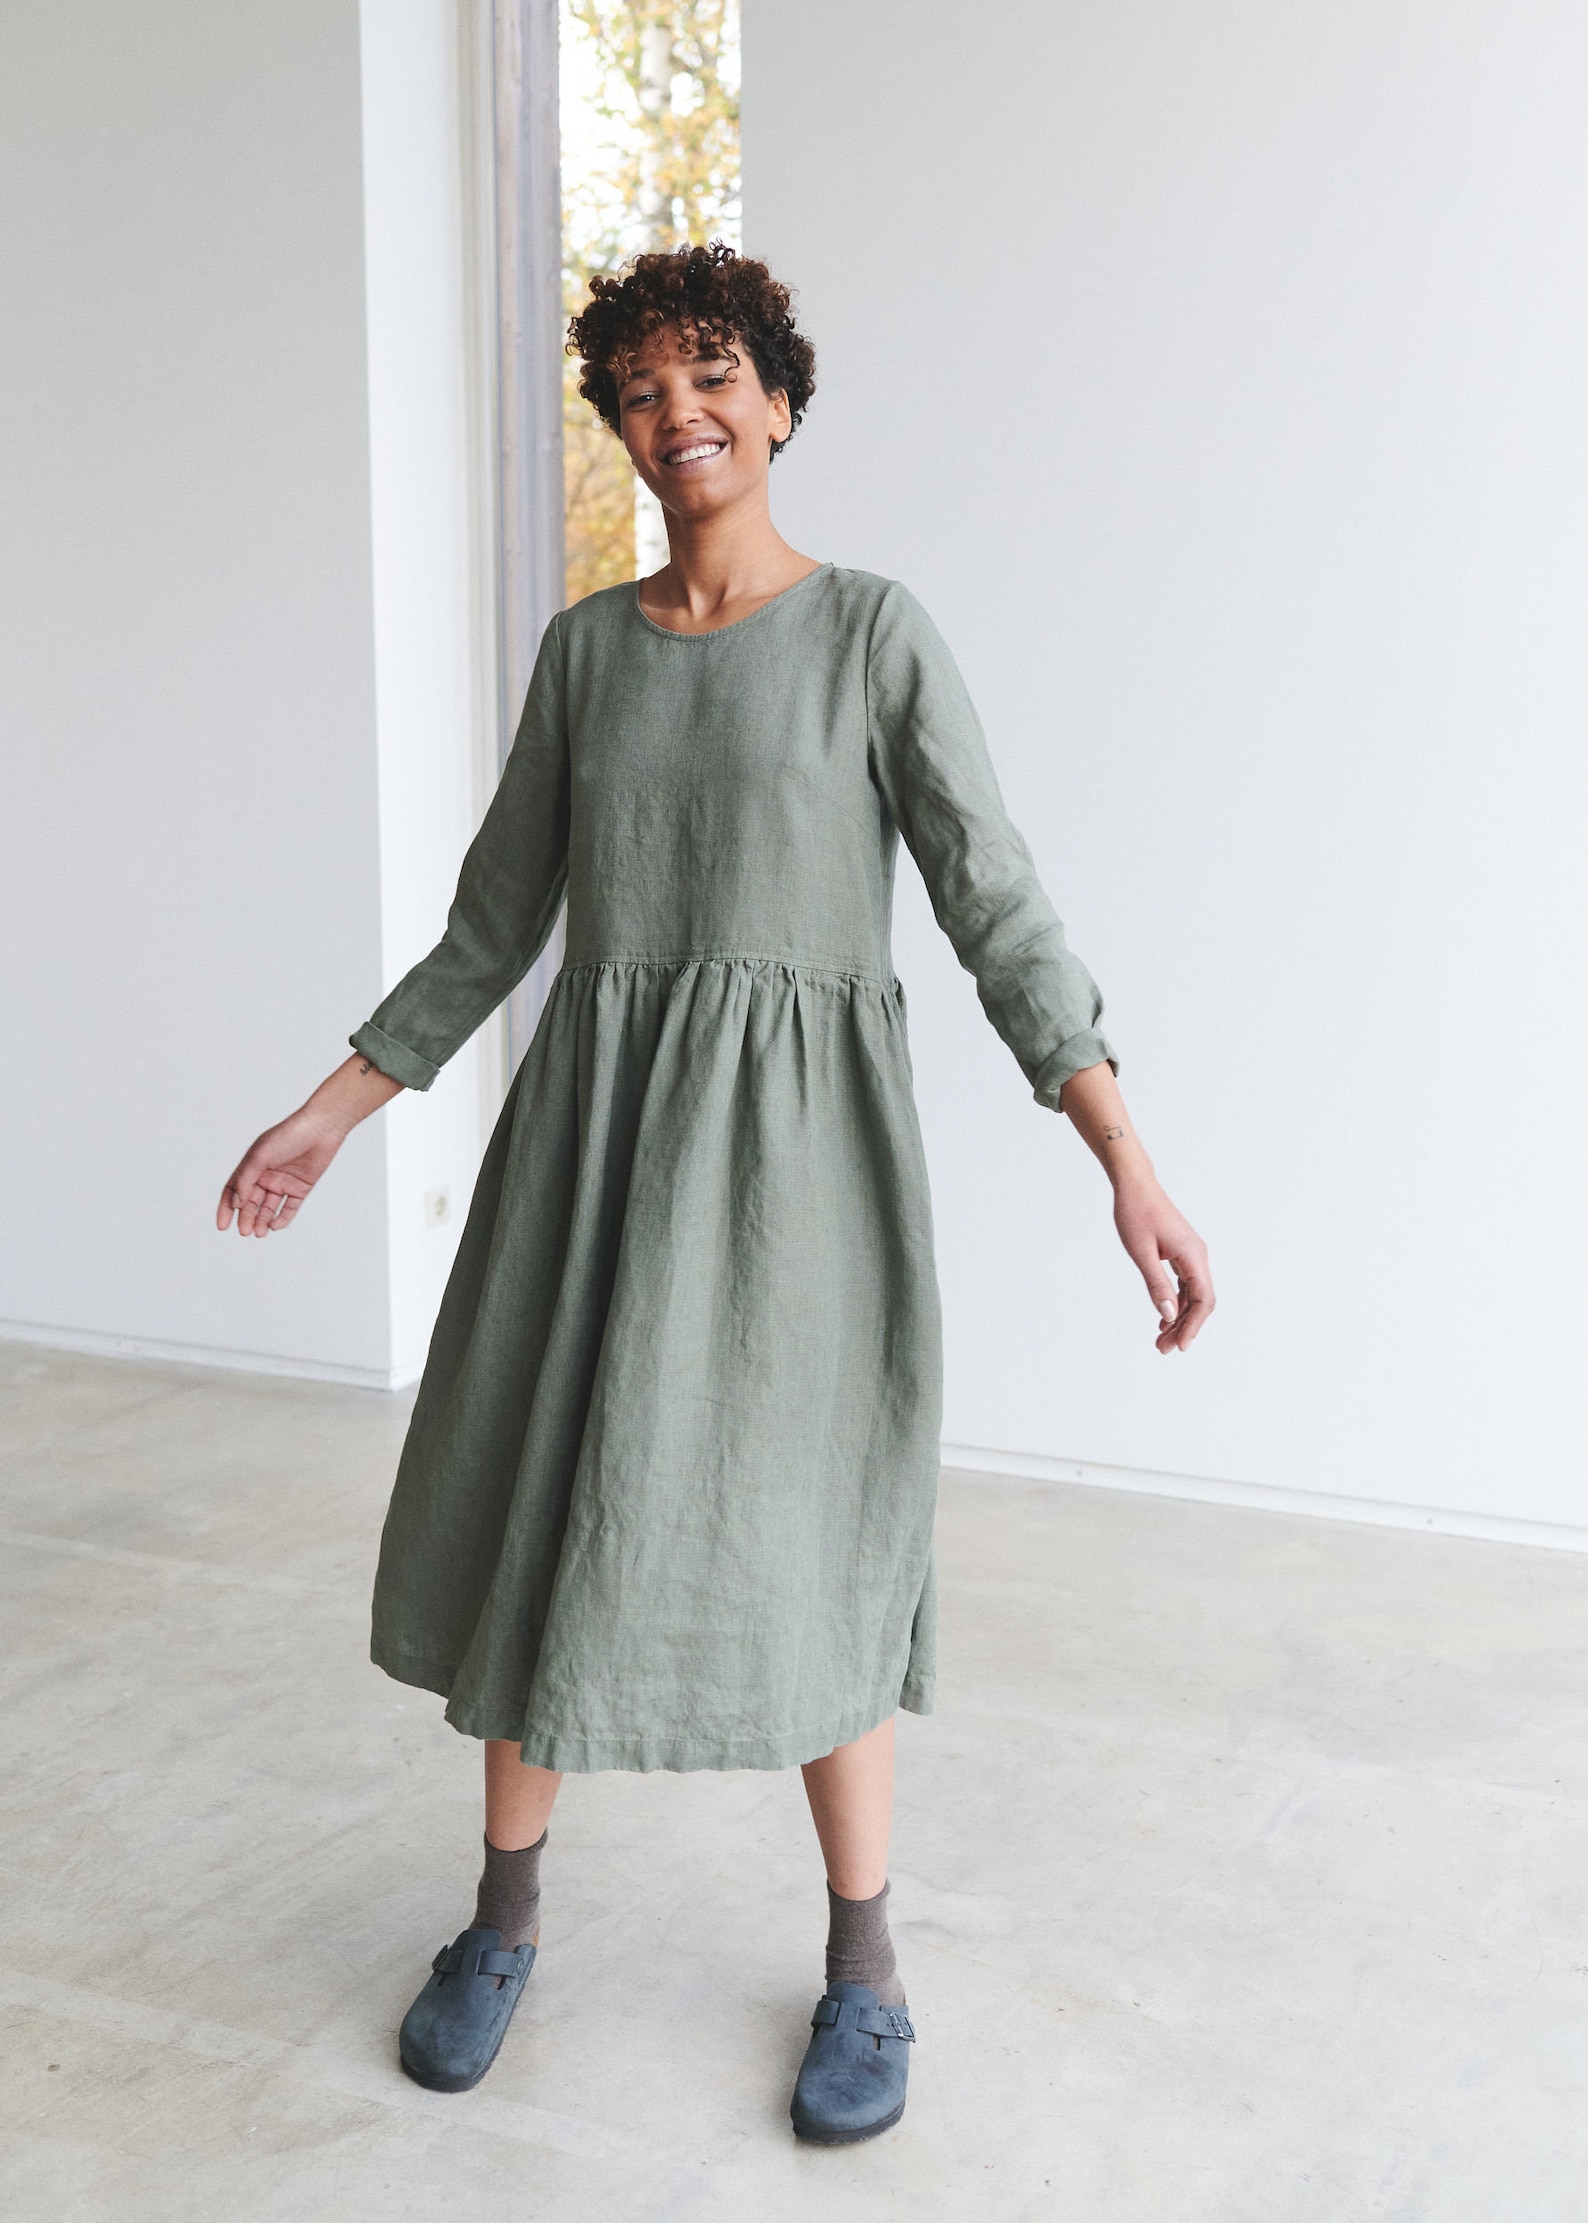 Alice Pine Green Dress Long Linen Dress Maxi Linen Dress | Etsy